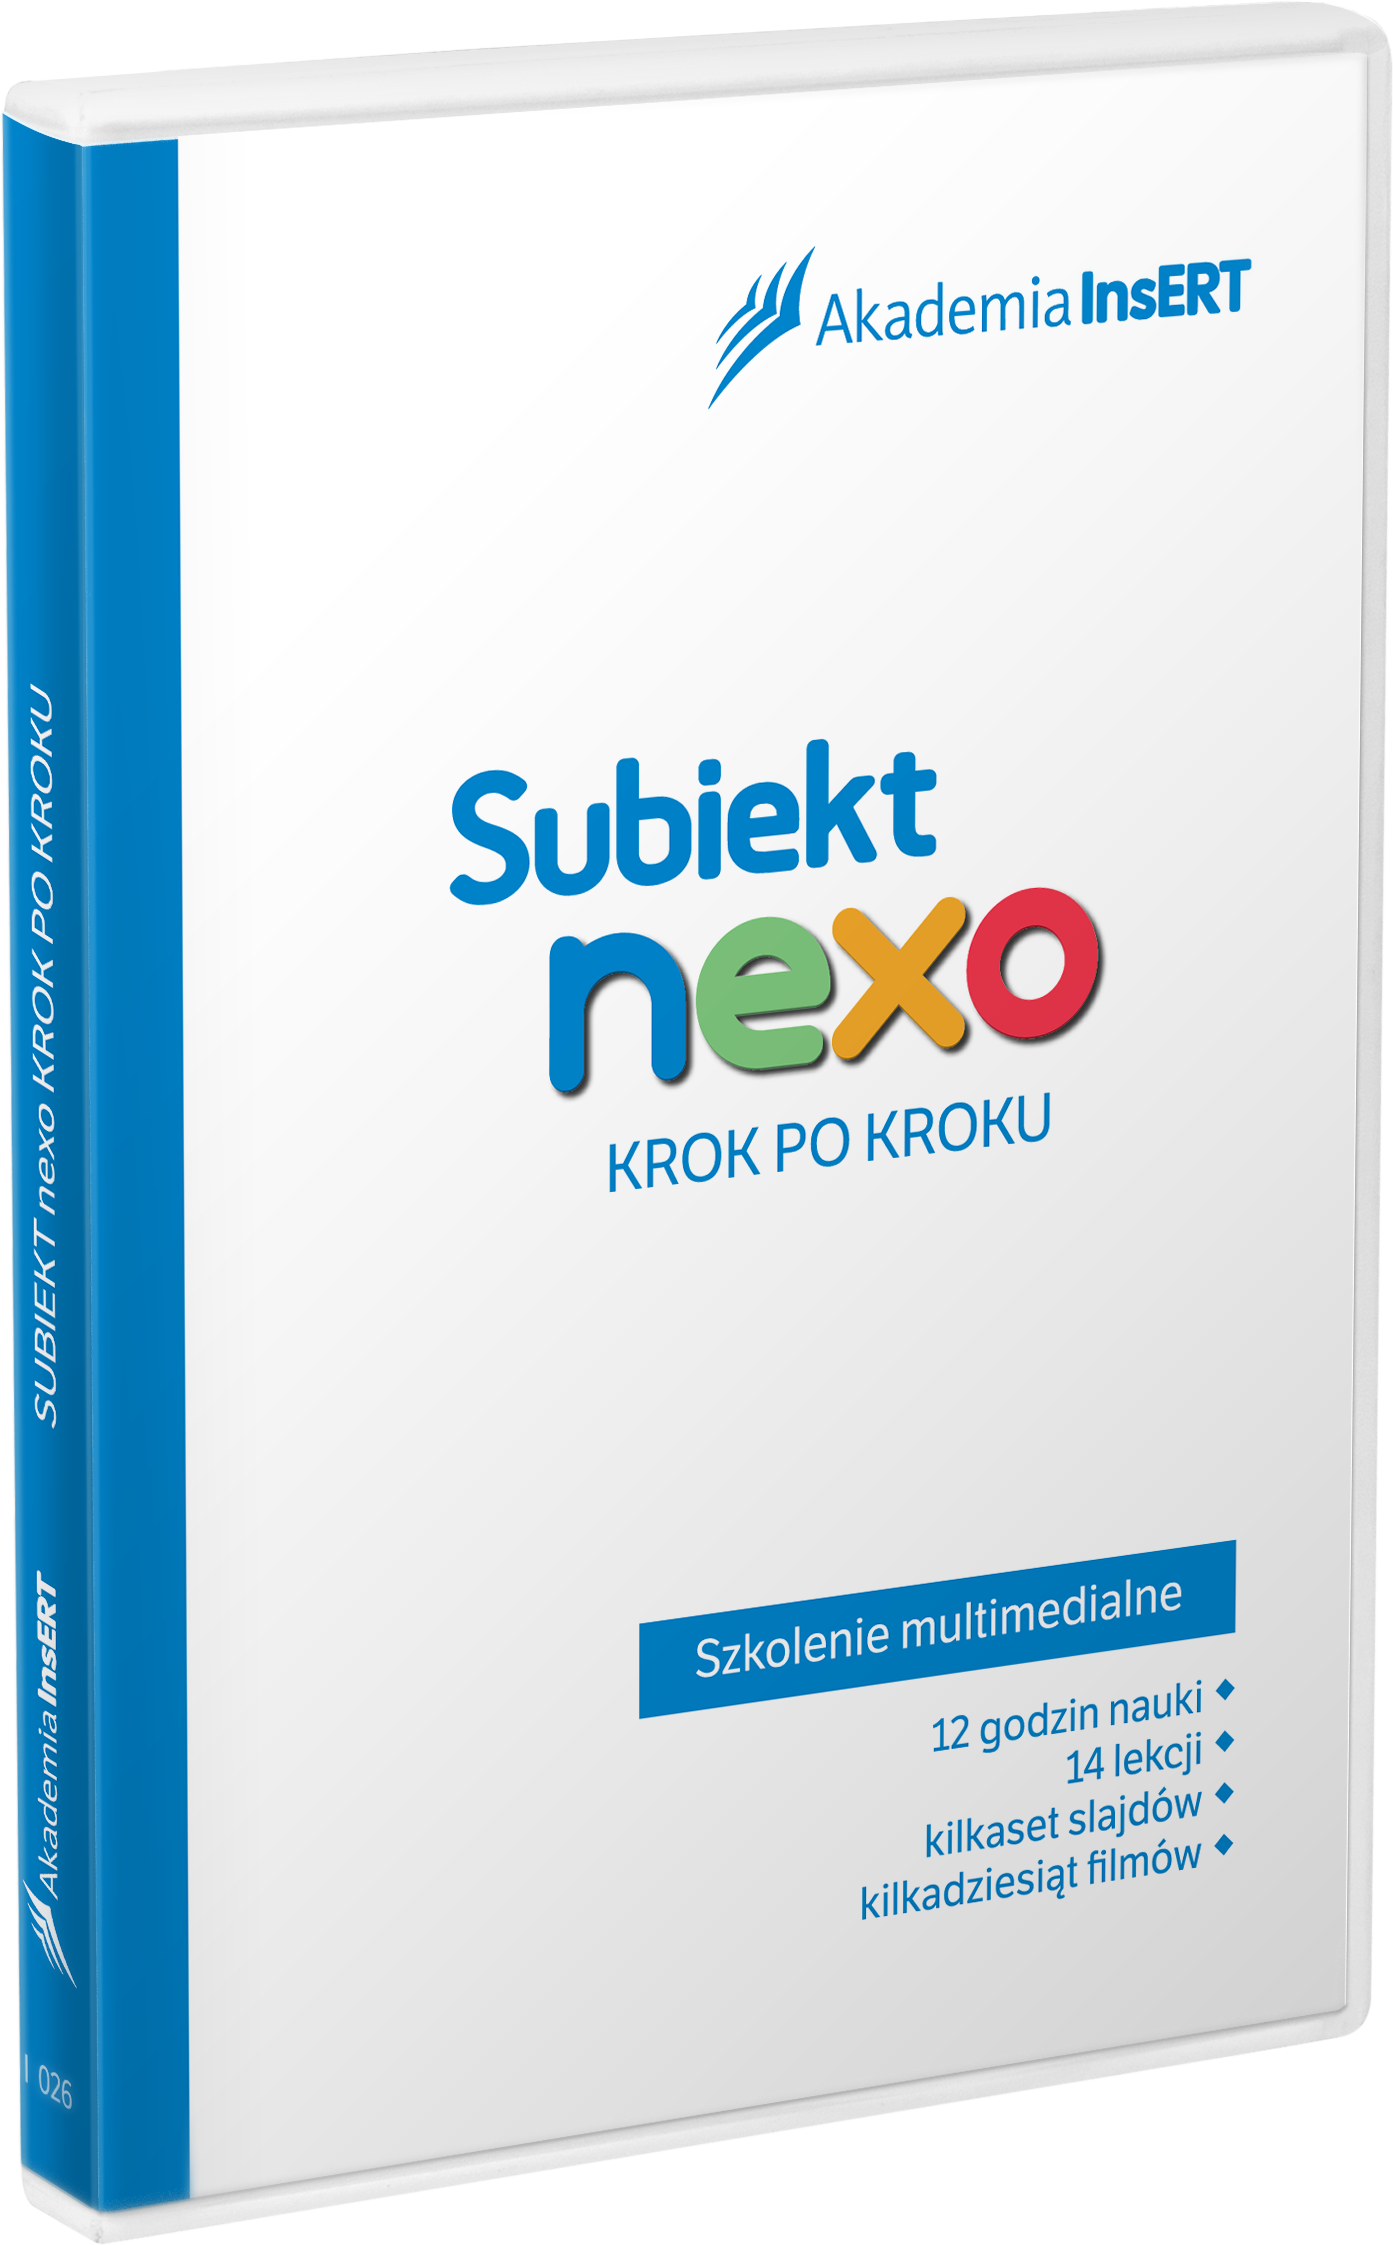 Subiekt_nexo_krok_po_kroku.png